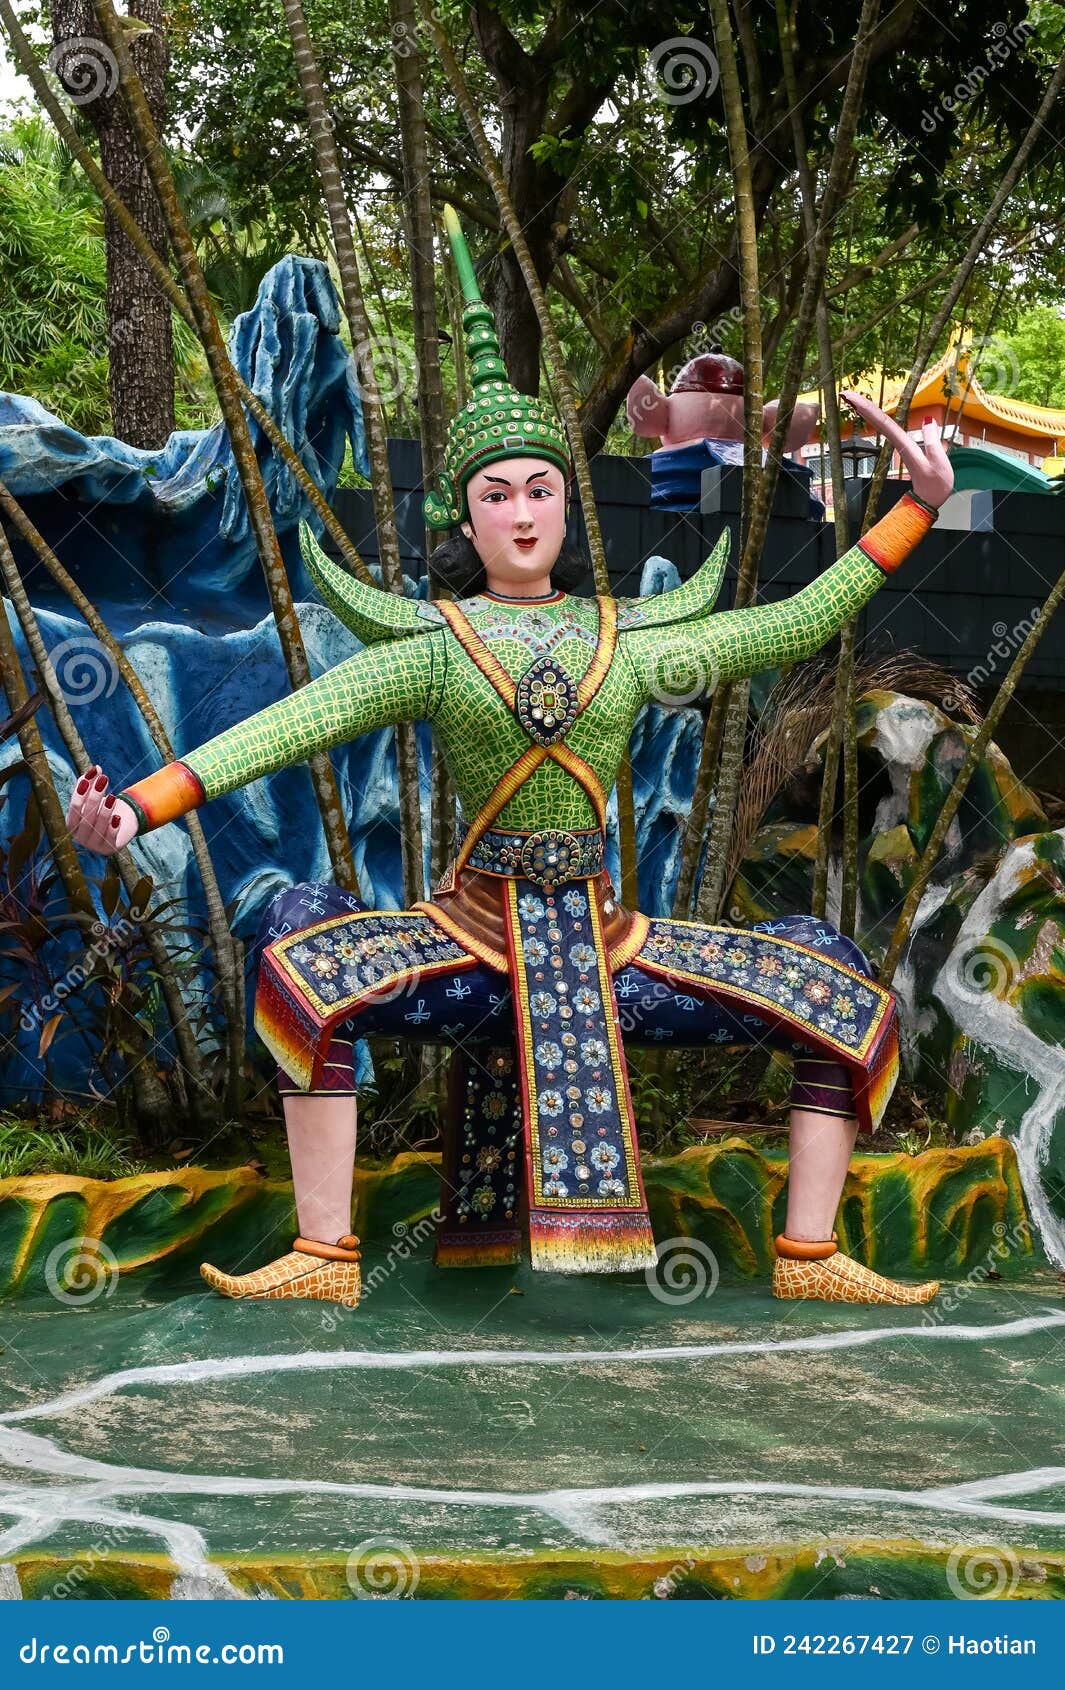 thai dancer statue at haw par villa, singapore